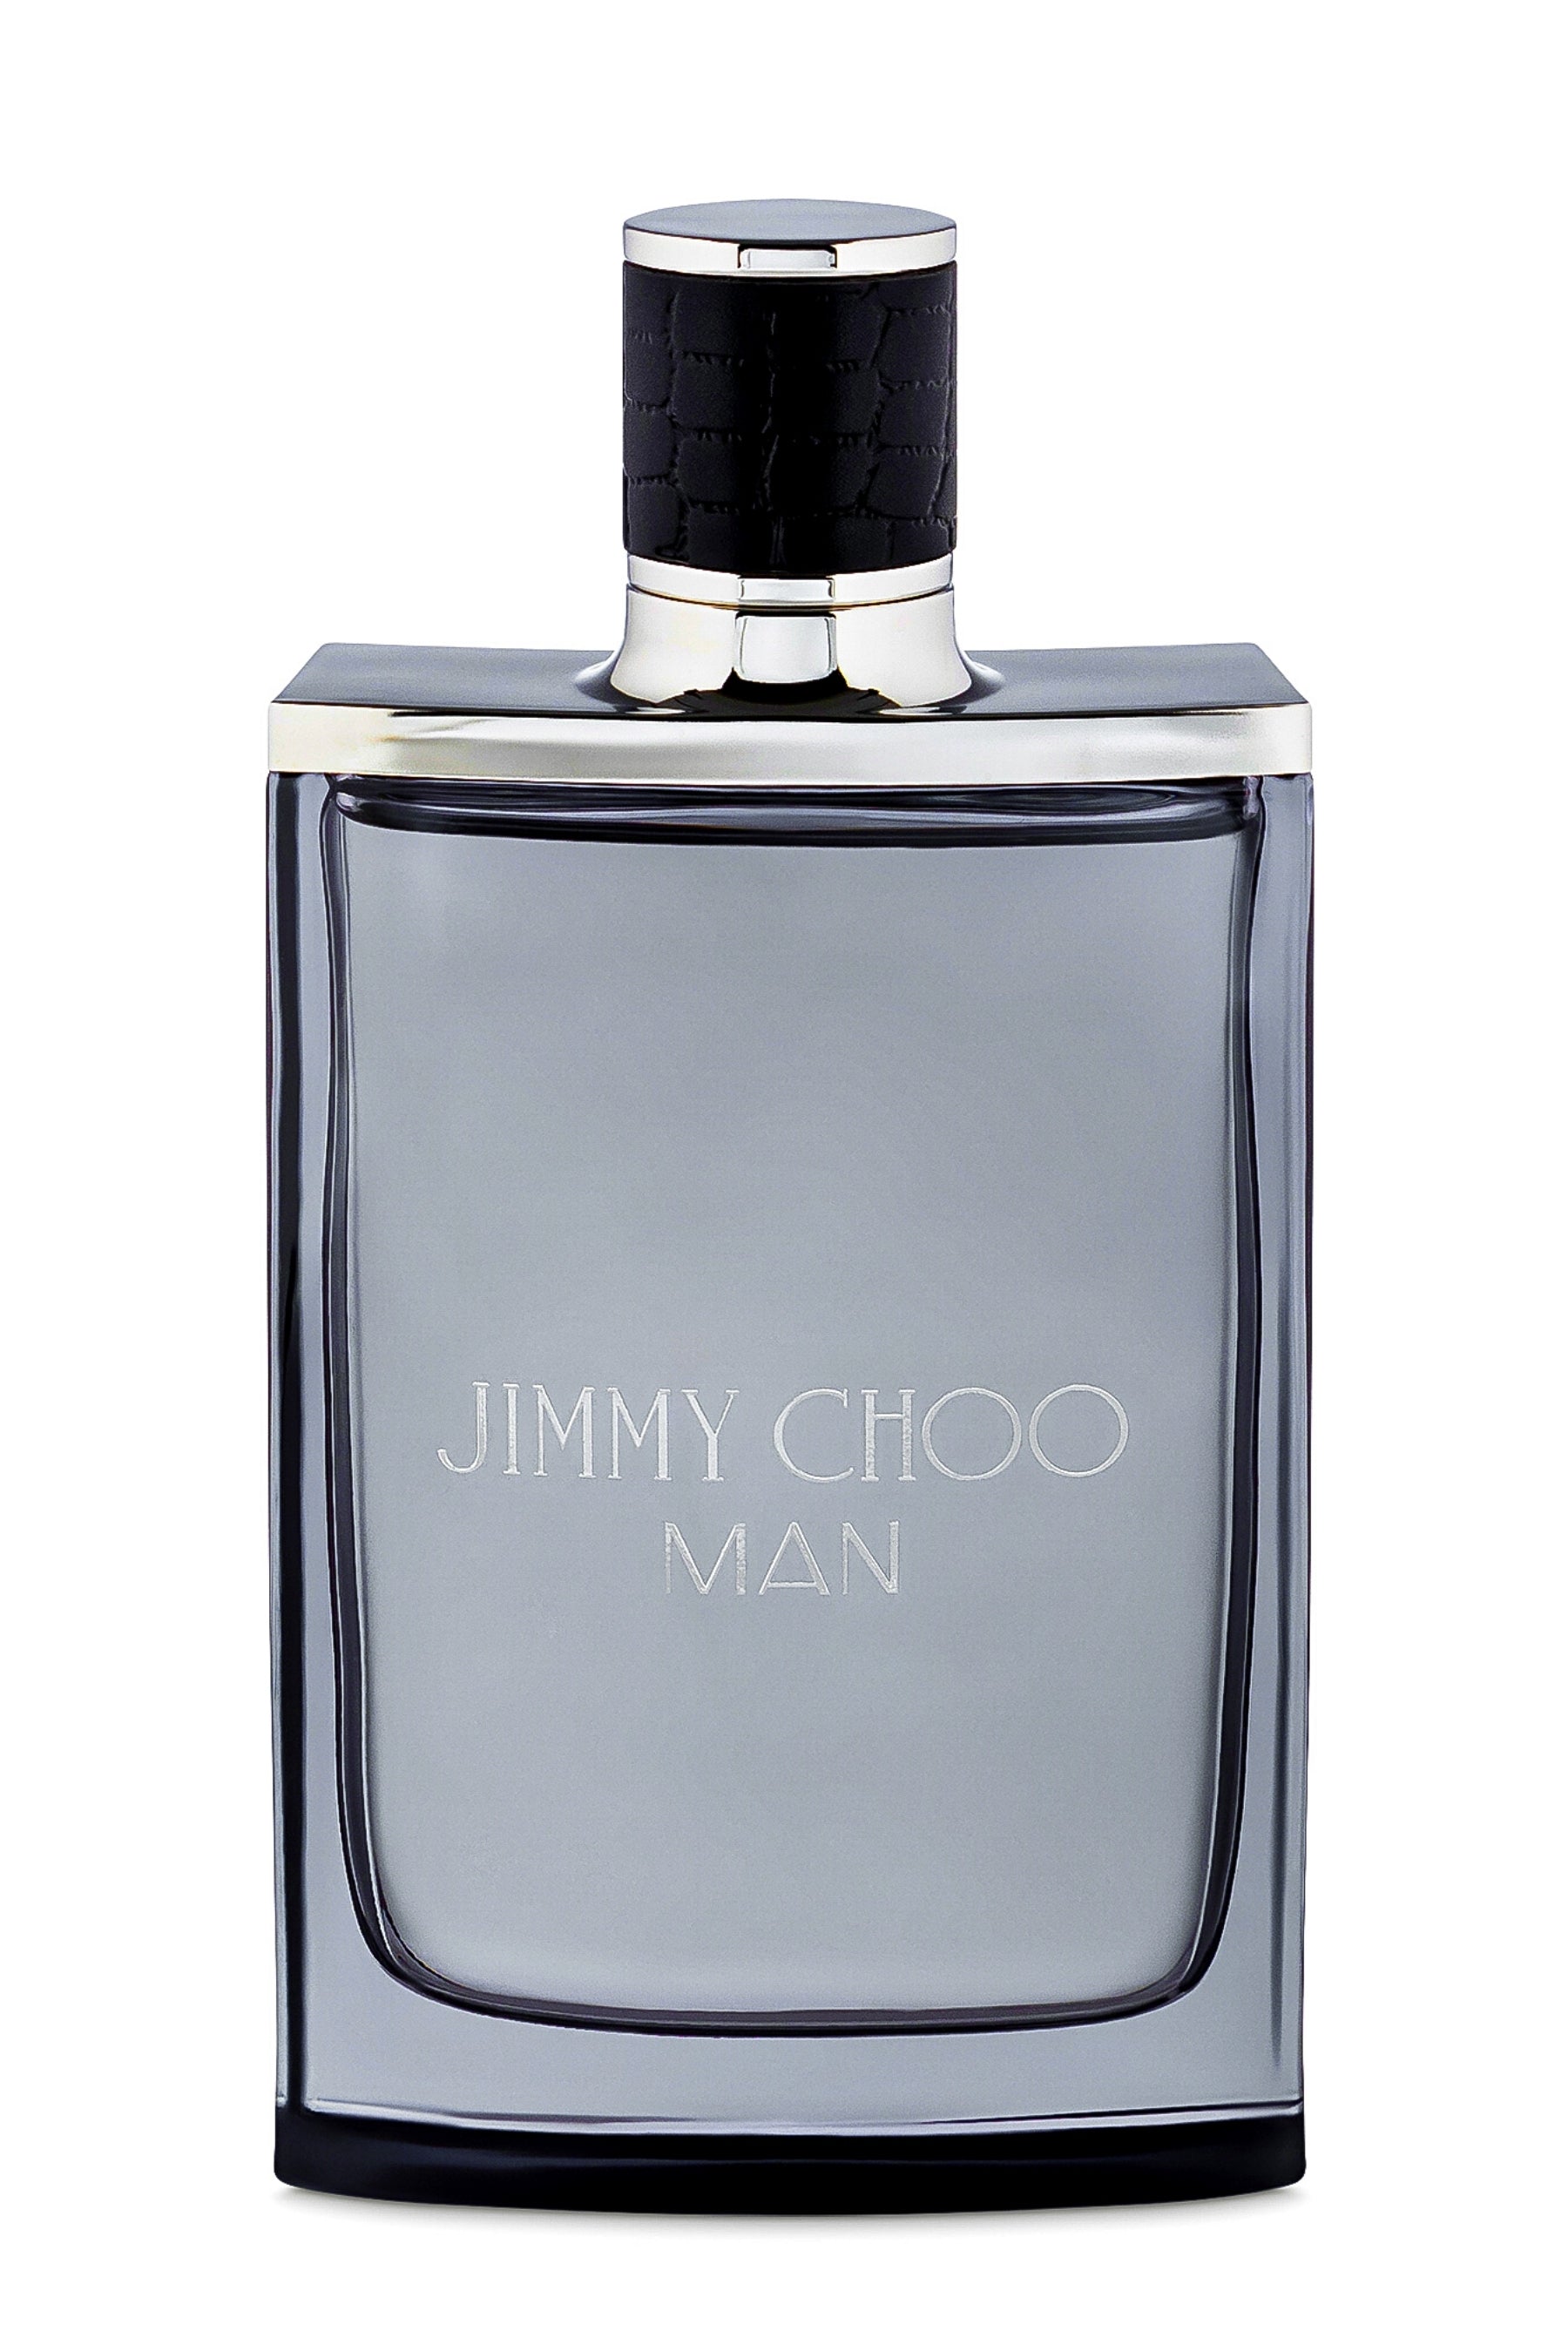 Jimmy Choo Men's Eau de Toilette Spray - 3.3 fl oz bottle